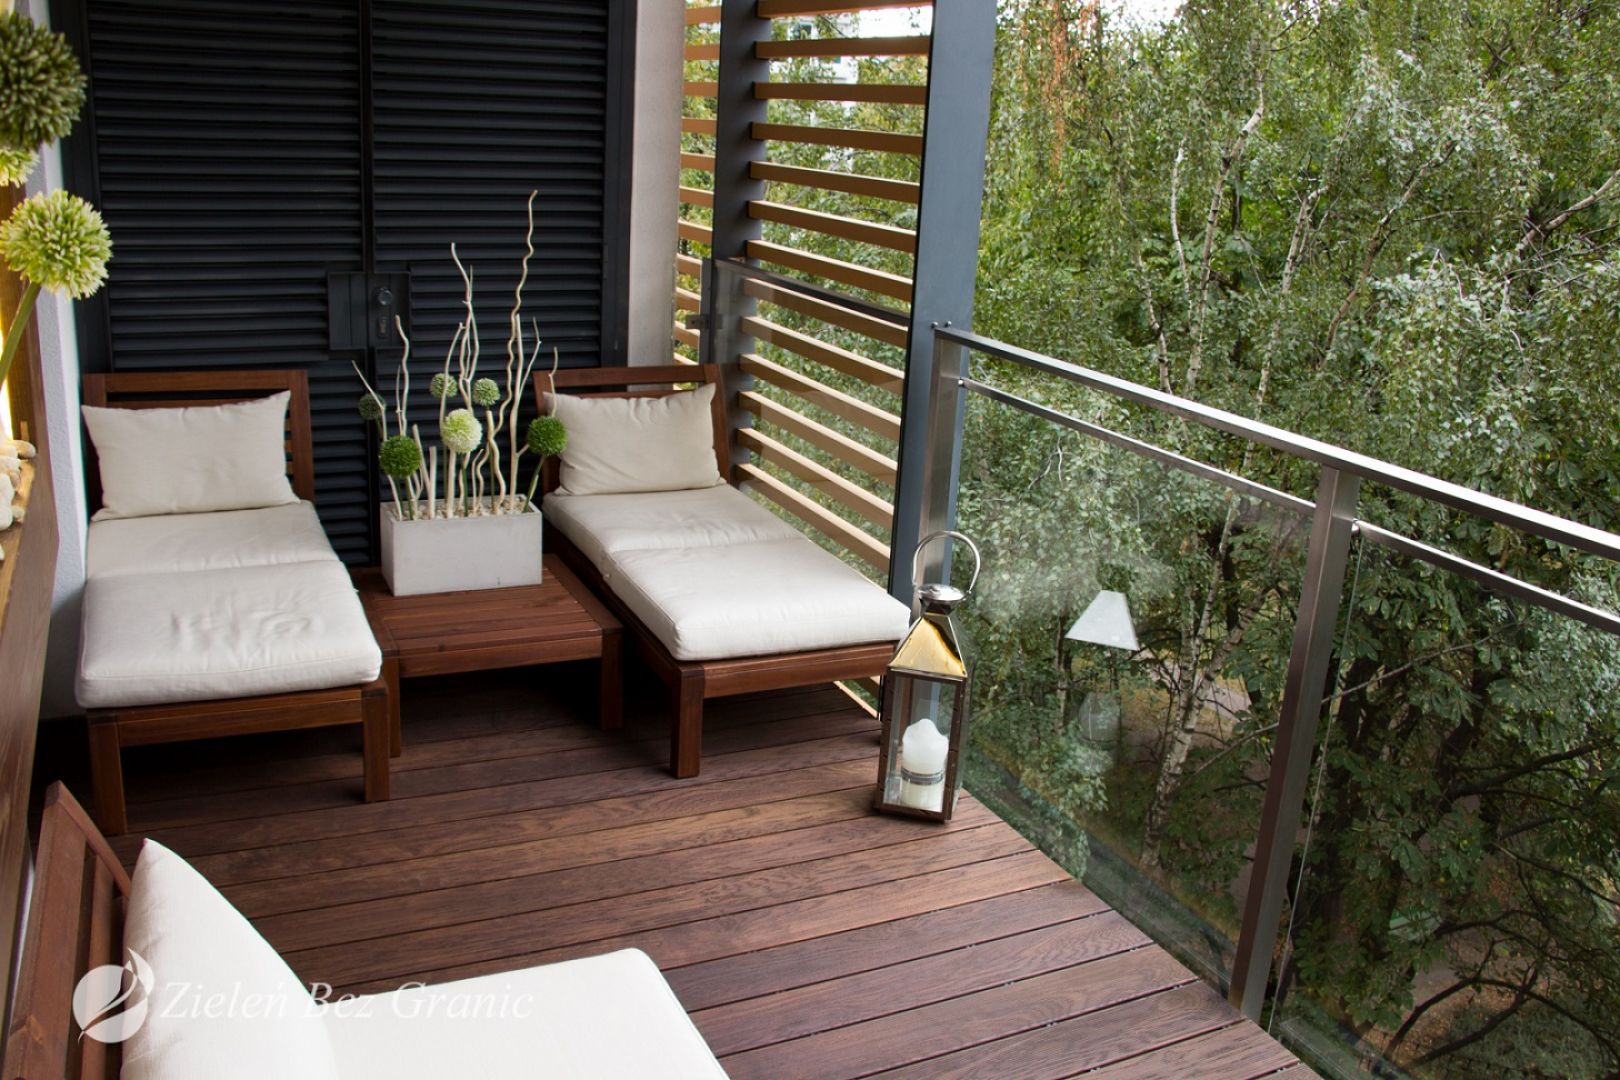 Balkon urządzony w naturalnym, ciepłym stylu z wykorzystaniem drewna, będzie stanowił doskonałą przestrzeń sprzyjającą wypoczynkowi. Fot. Komplex Market